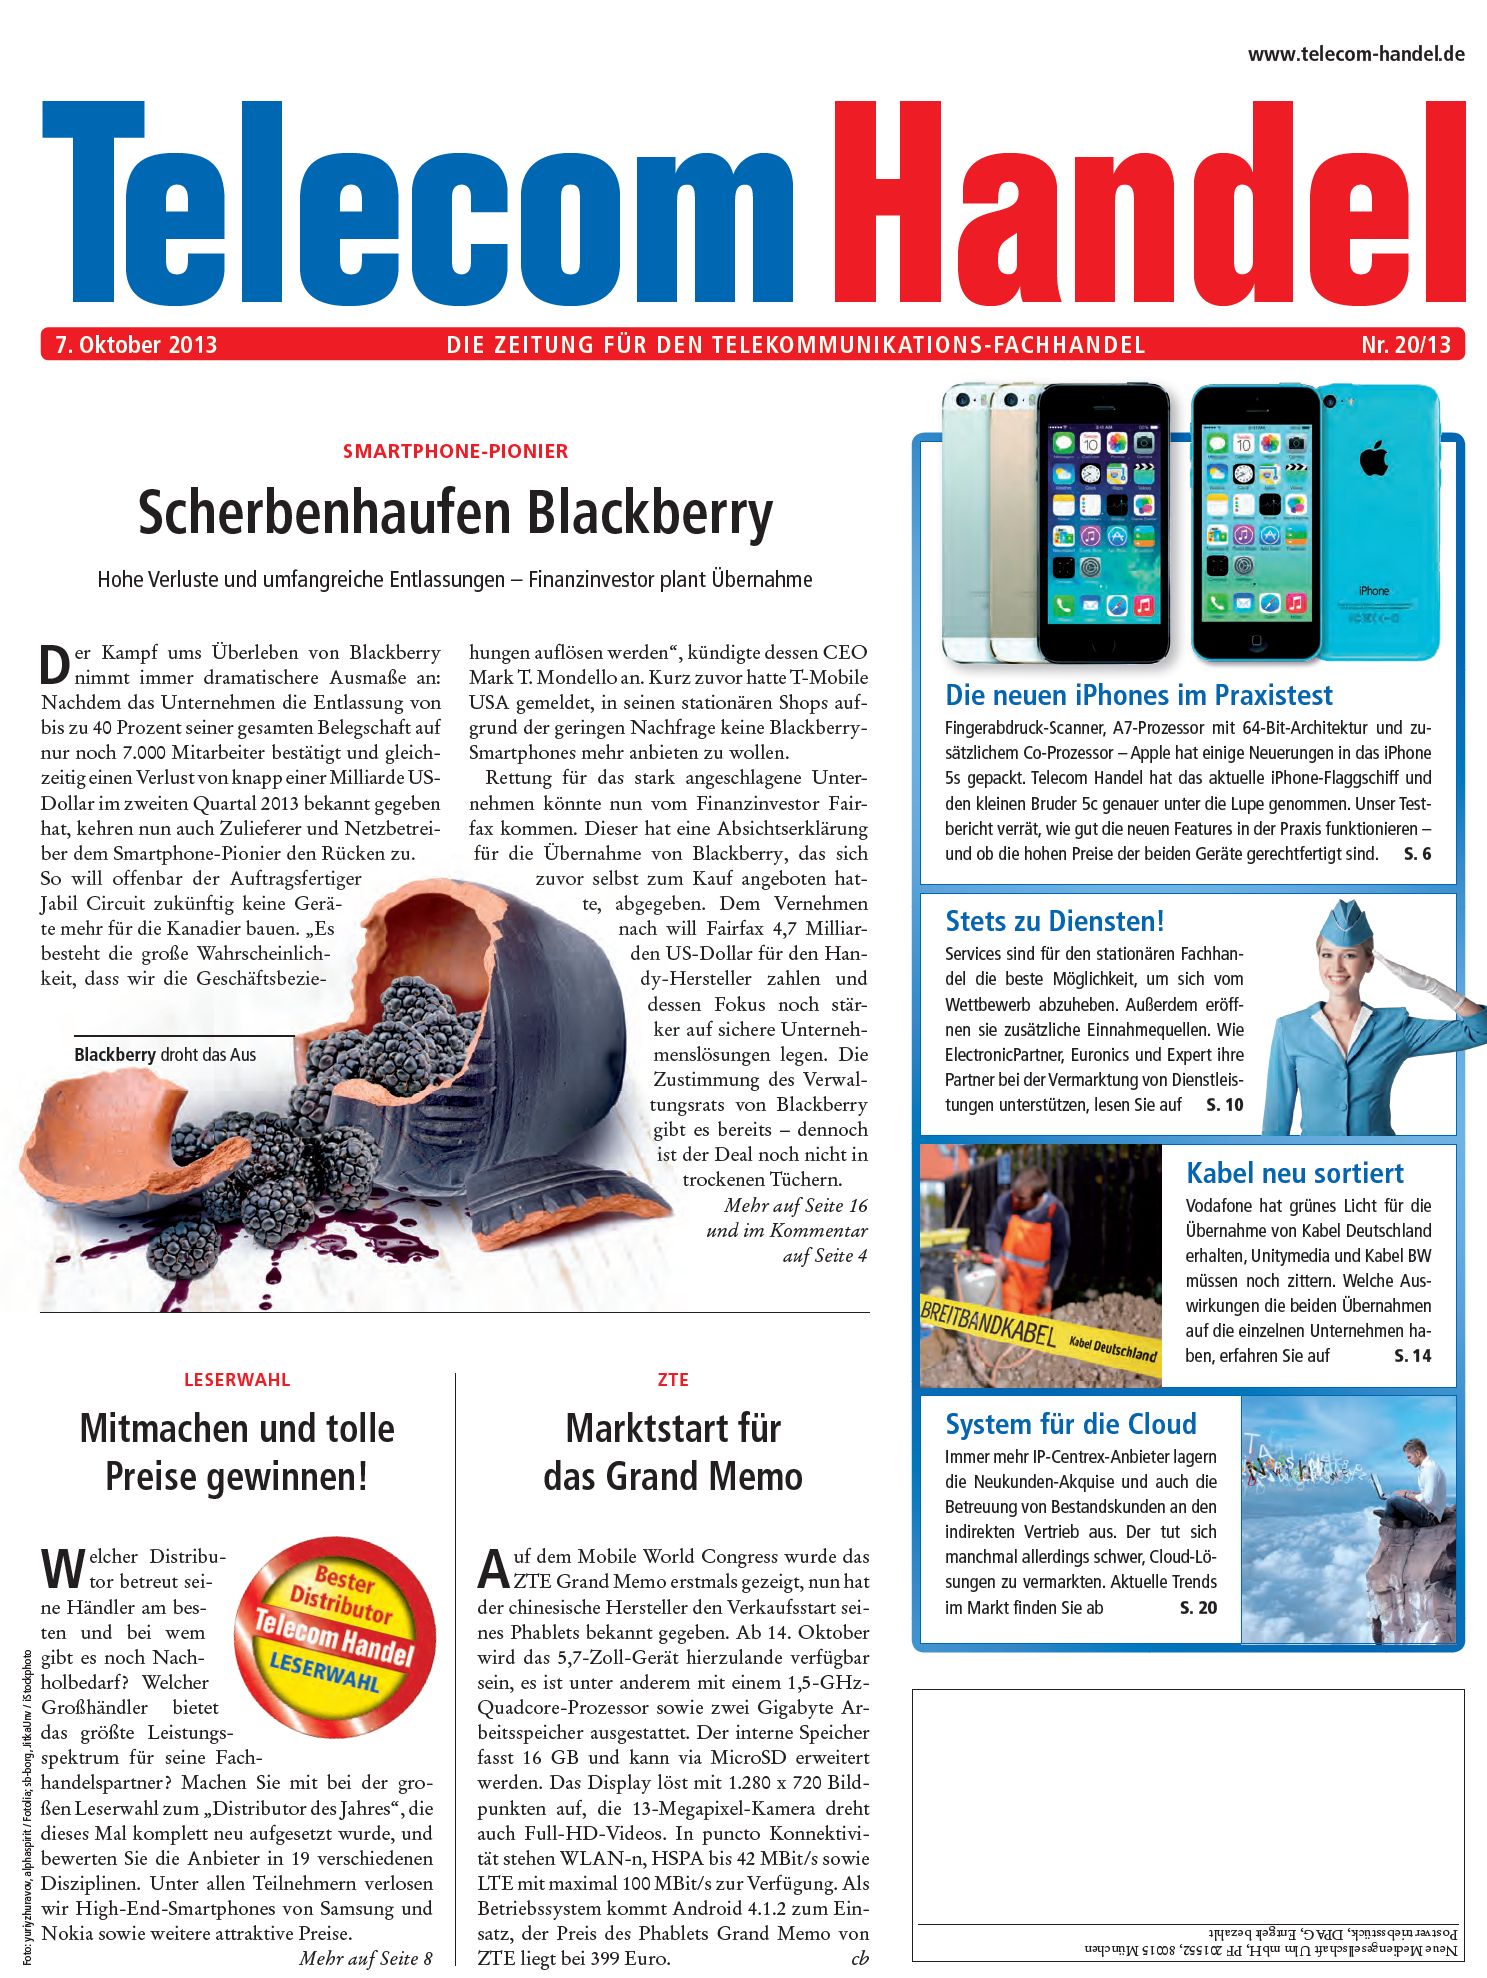 Telecom Handel Ausgabe 20/2013